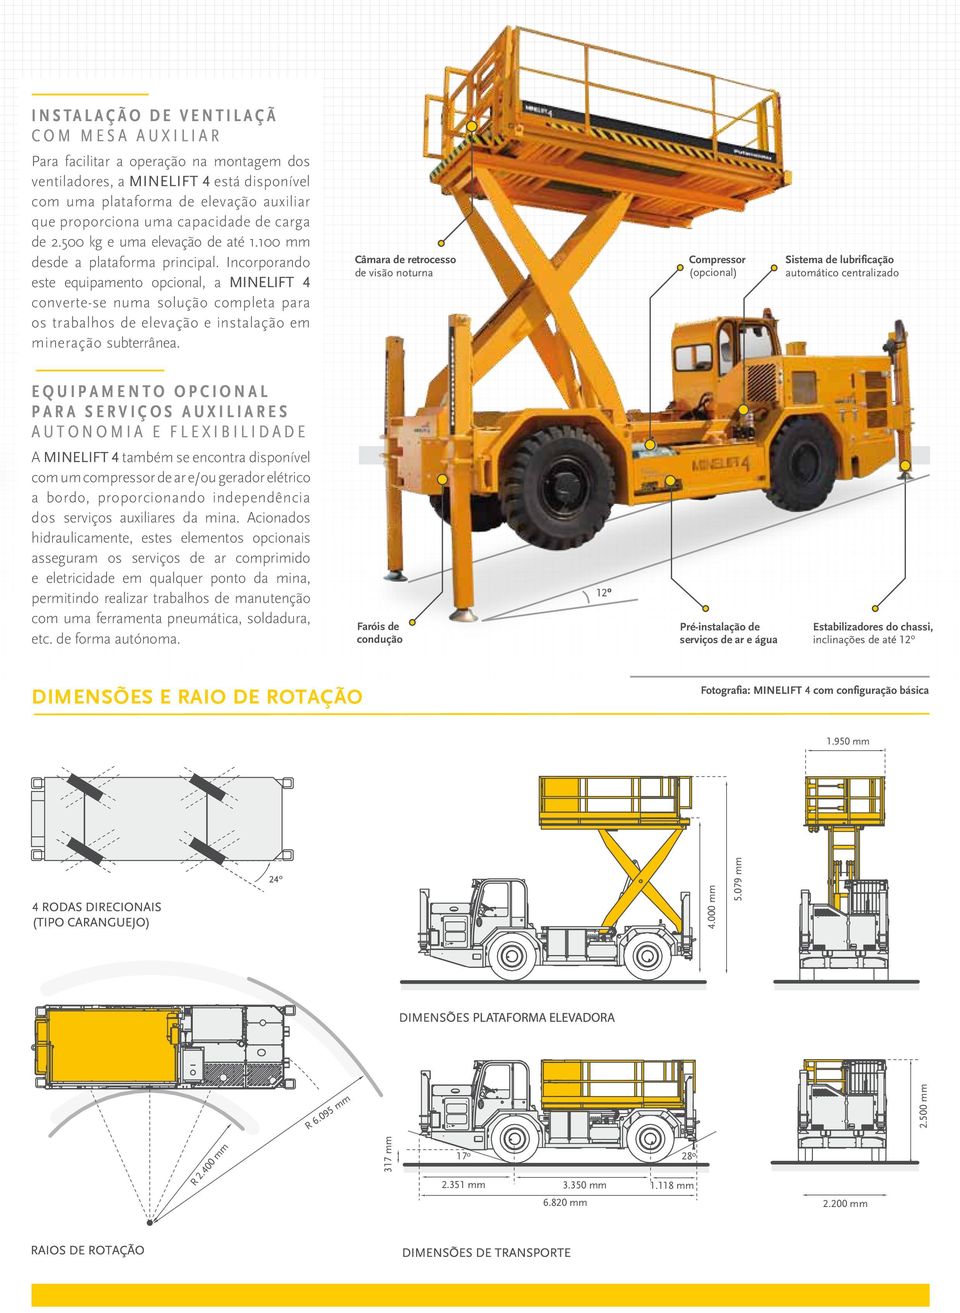 Incorporando este equipamento opcional, a MINELIFT 4 converte-se numa solução completa para os trabalhos de elevação e instalação em mineração subterrânea.